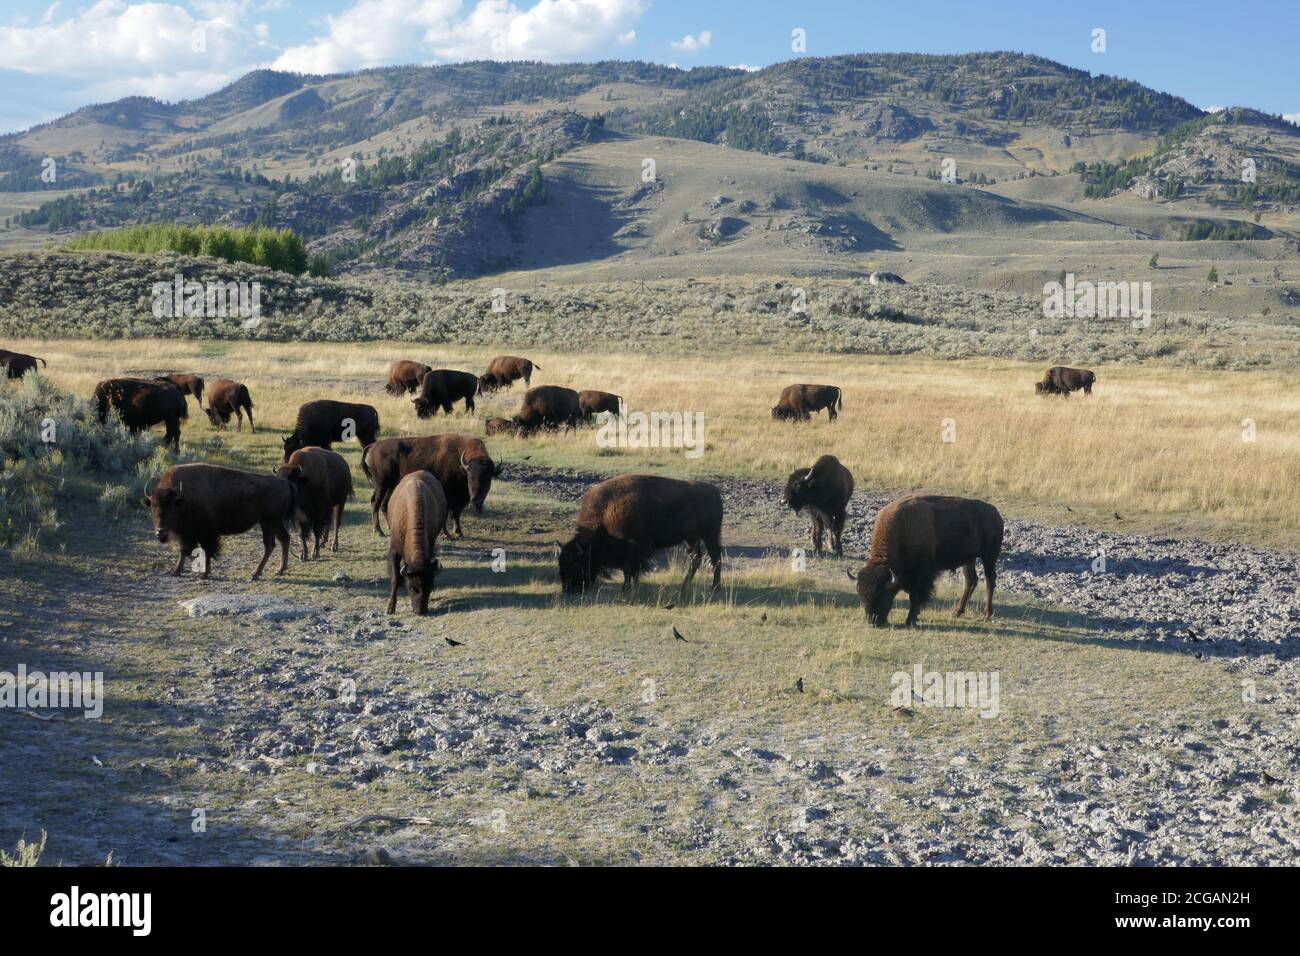 Troupeau de bisons en pâturage dans la vallée de Lamar, parc national de Yellowstone, Wyoming Banque D'Images